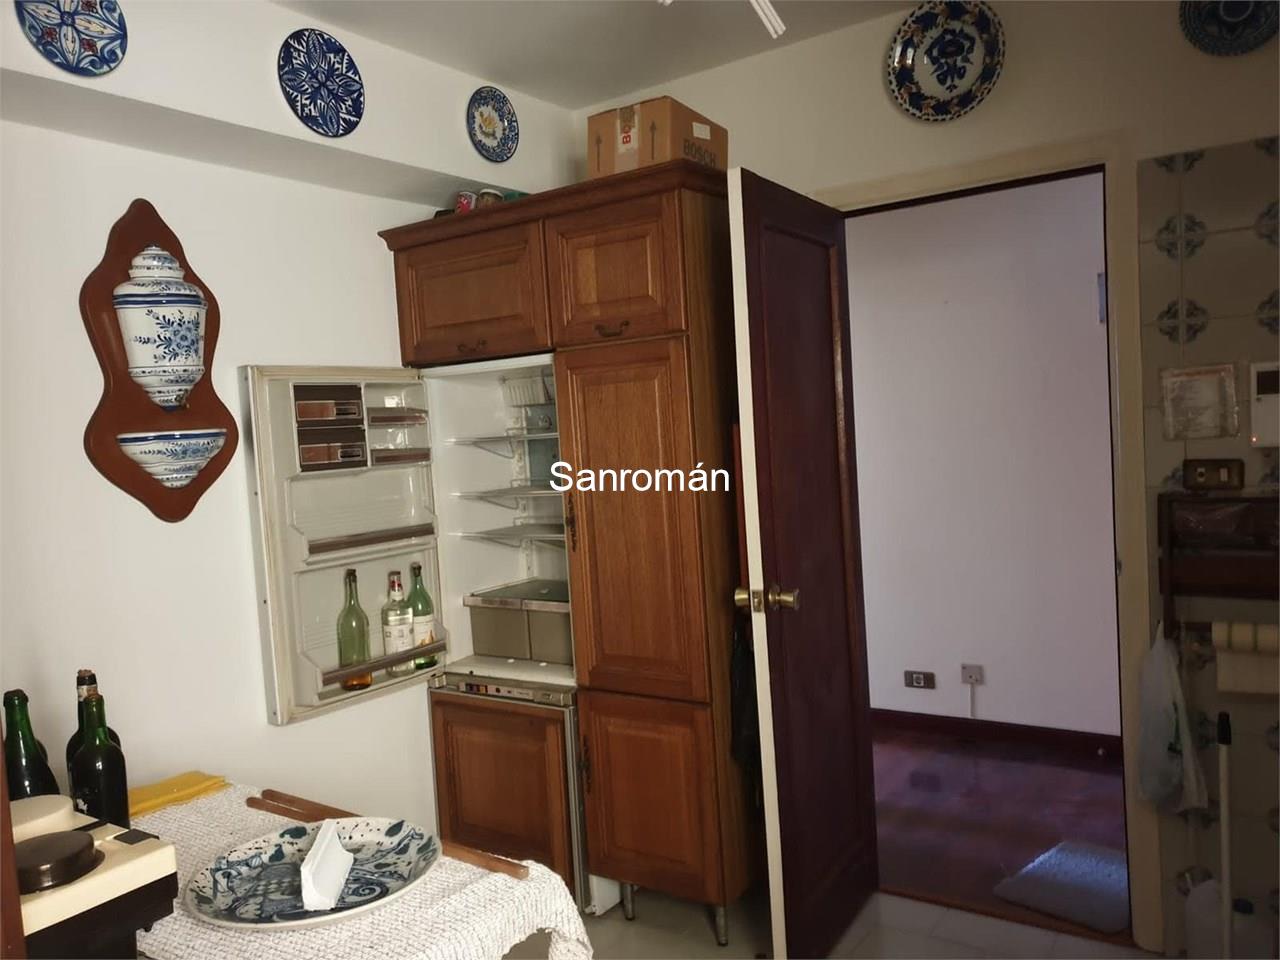 Foto 3 Apartamento de 2 dormitorios en Vigo - C/ Camelias, próximo al Concello de Vigo. Esquina Hispanidad.